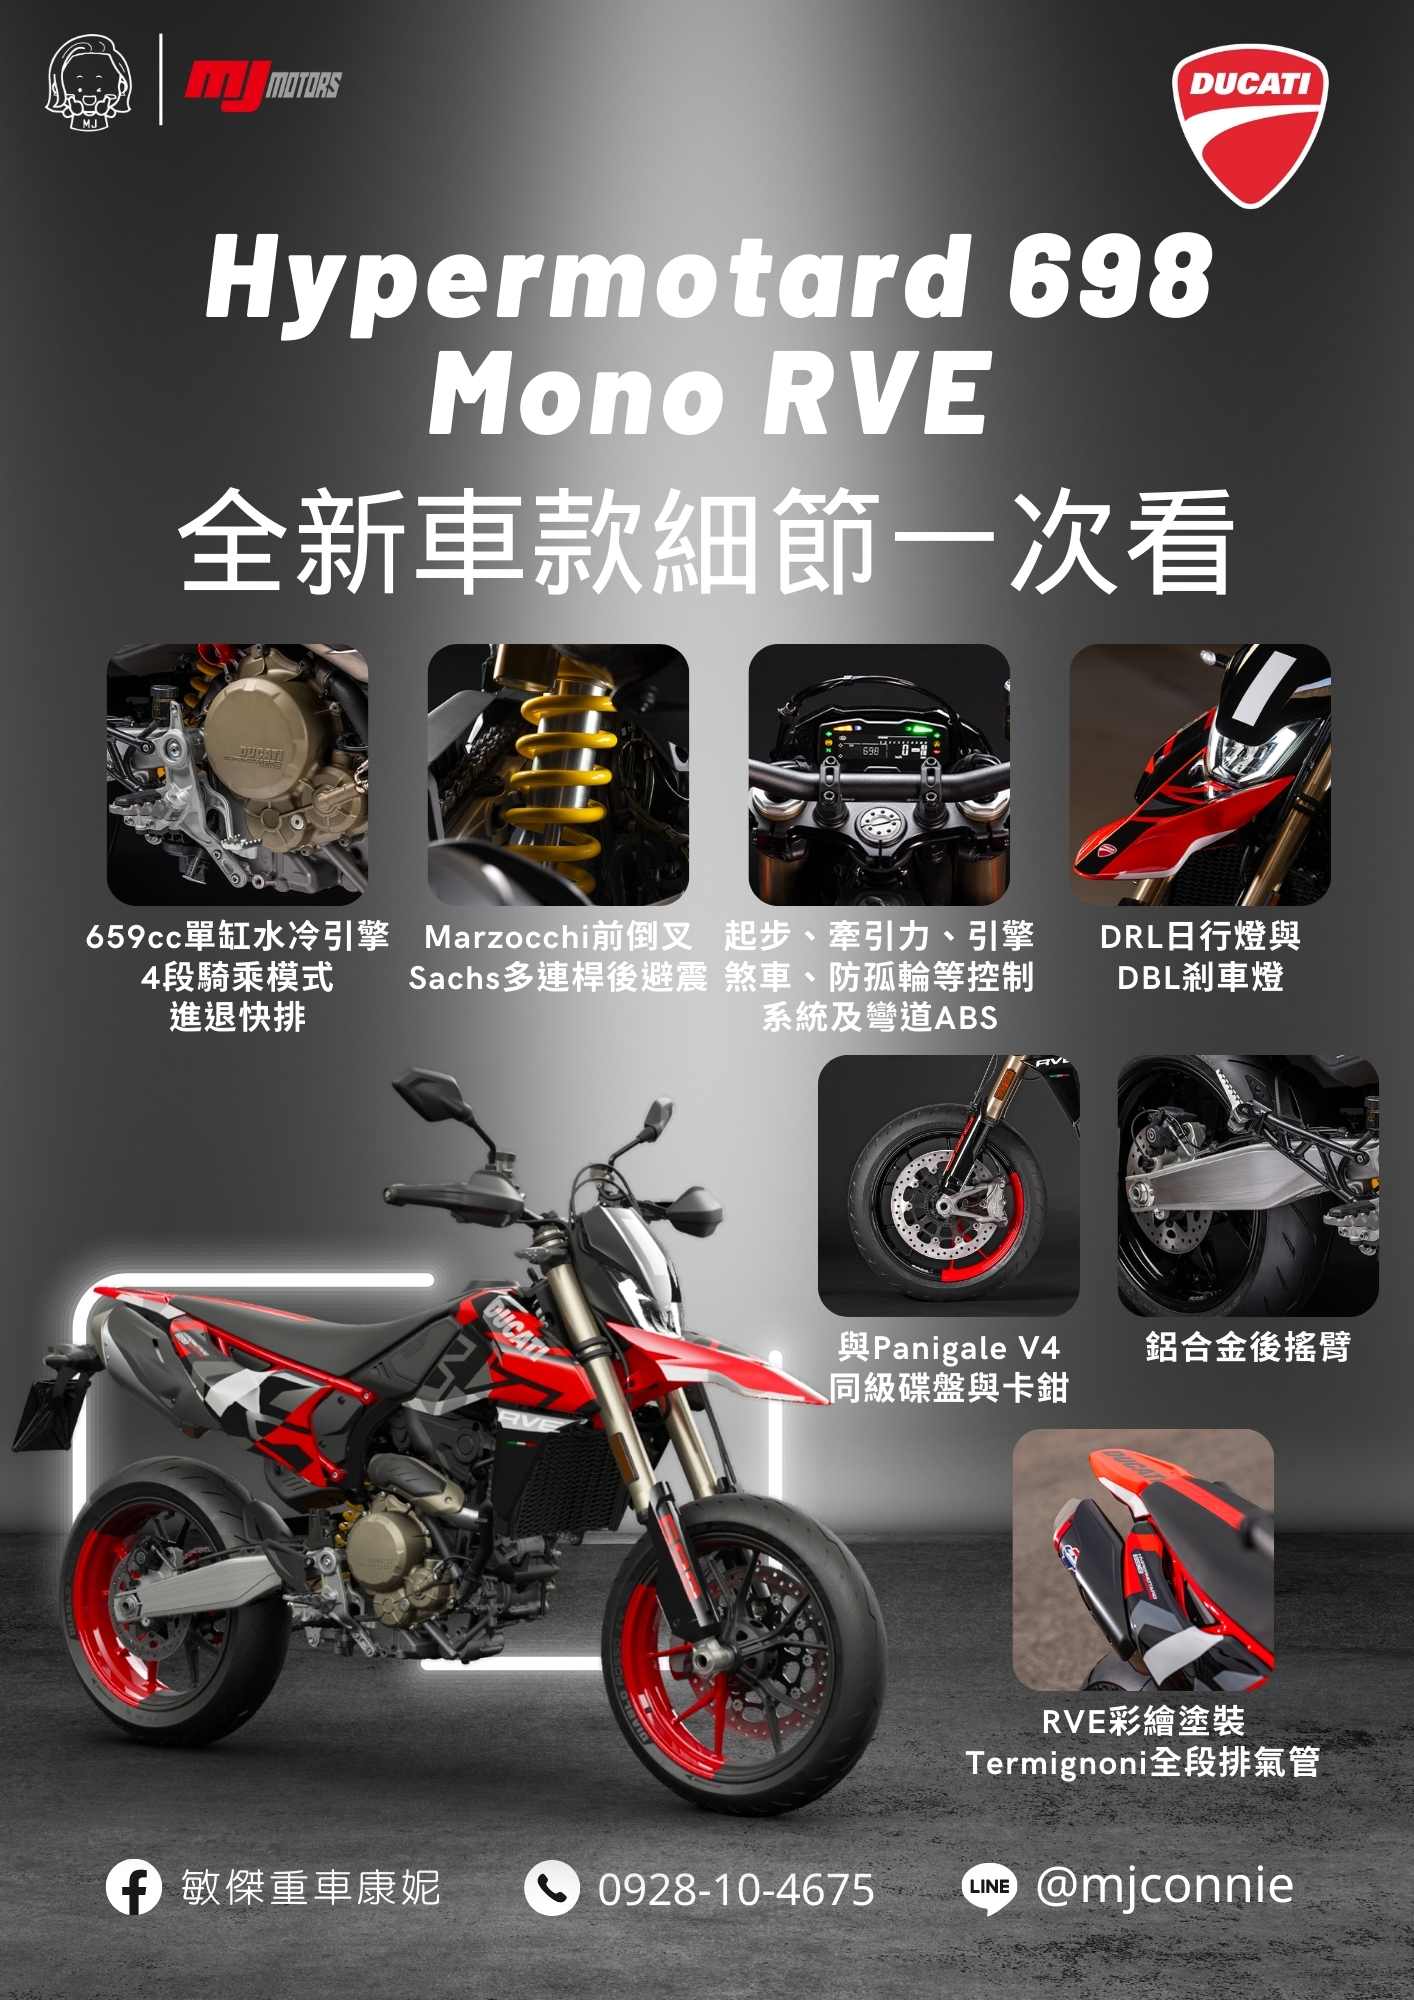 【敏傑車業資深銷售專員 康妮 Connie】Ducati ypermotard 698 Mono RVE - 「Webike-摩托車市」 『敏傑康妮』Ducati Hypermotard 698 Mono RVE 在找大單缸的您 手刀排單嘍 ～